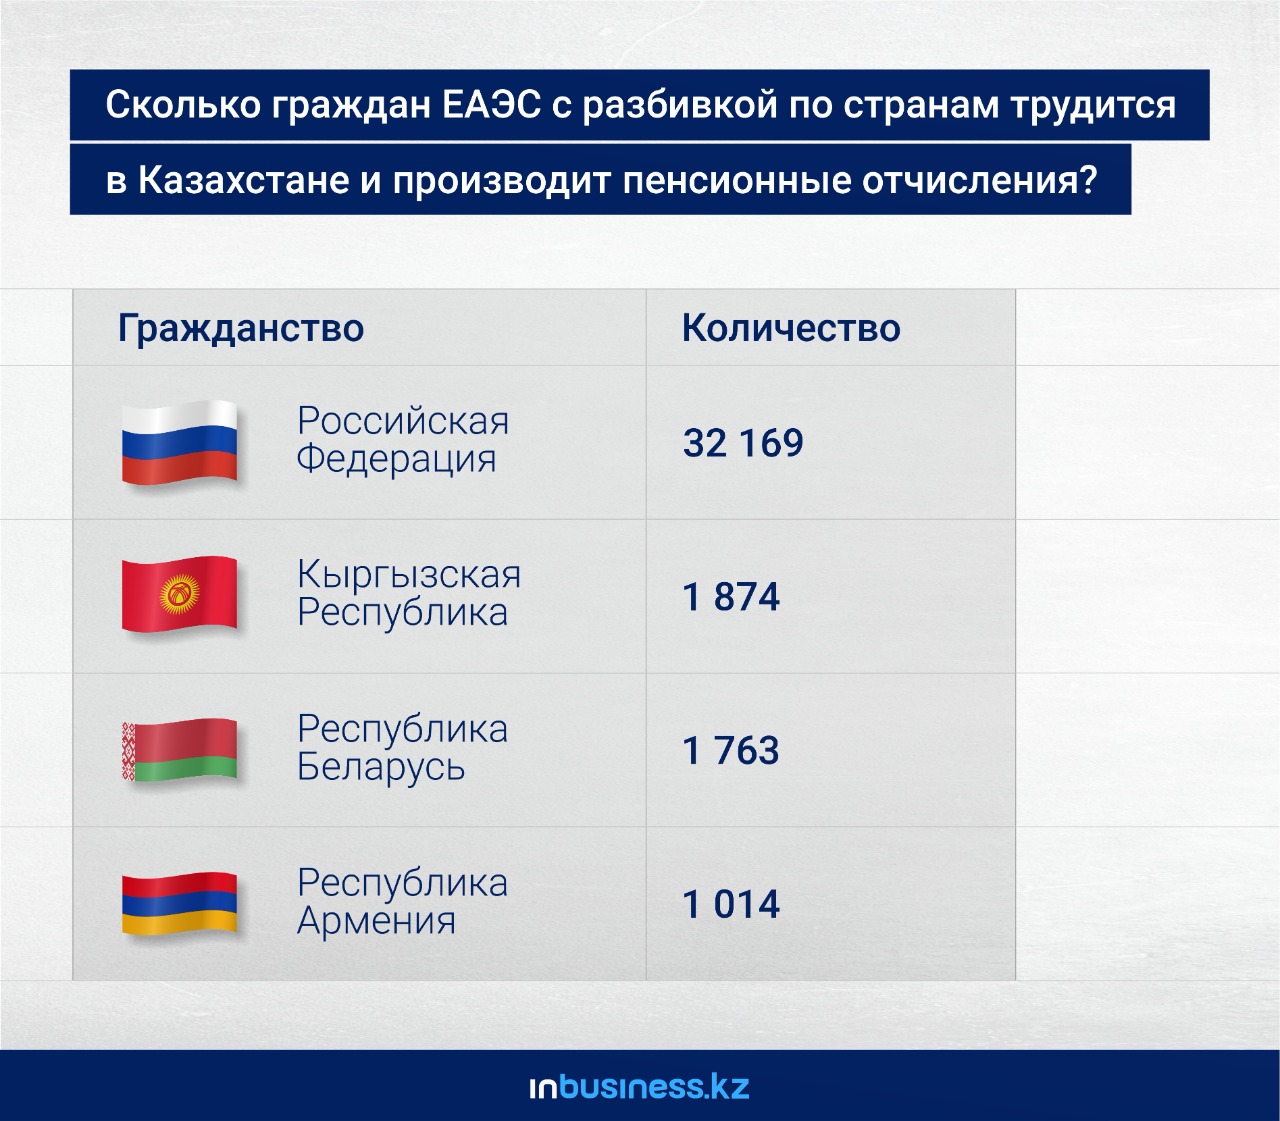 Более 32 тысяч россиян производят отчисления в ЕНПФ 